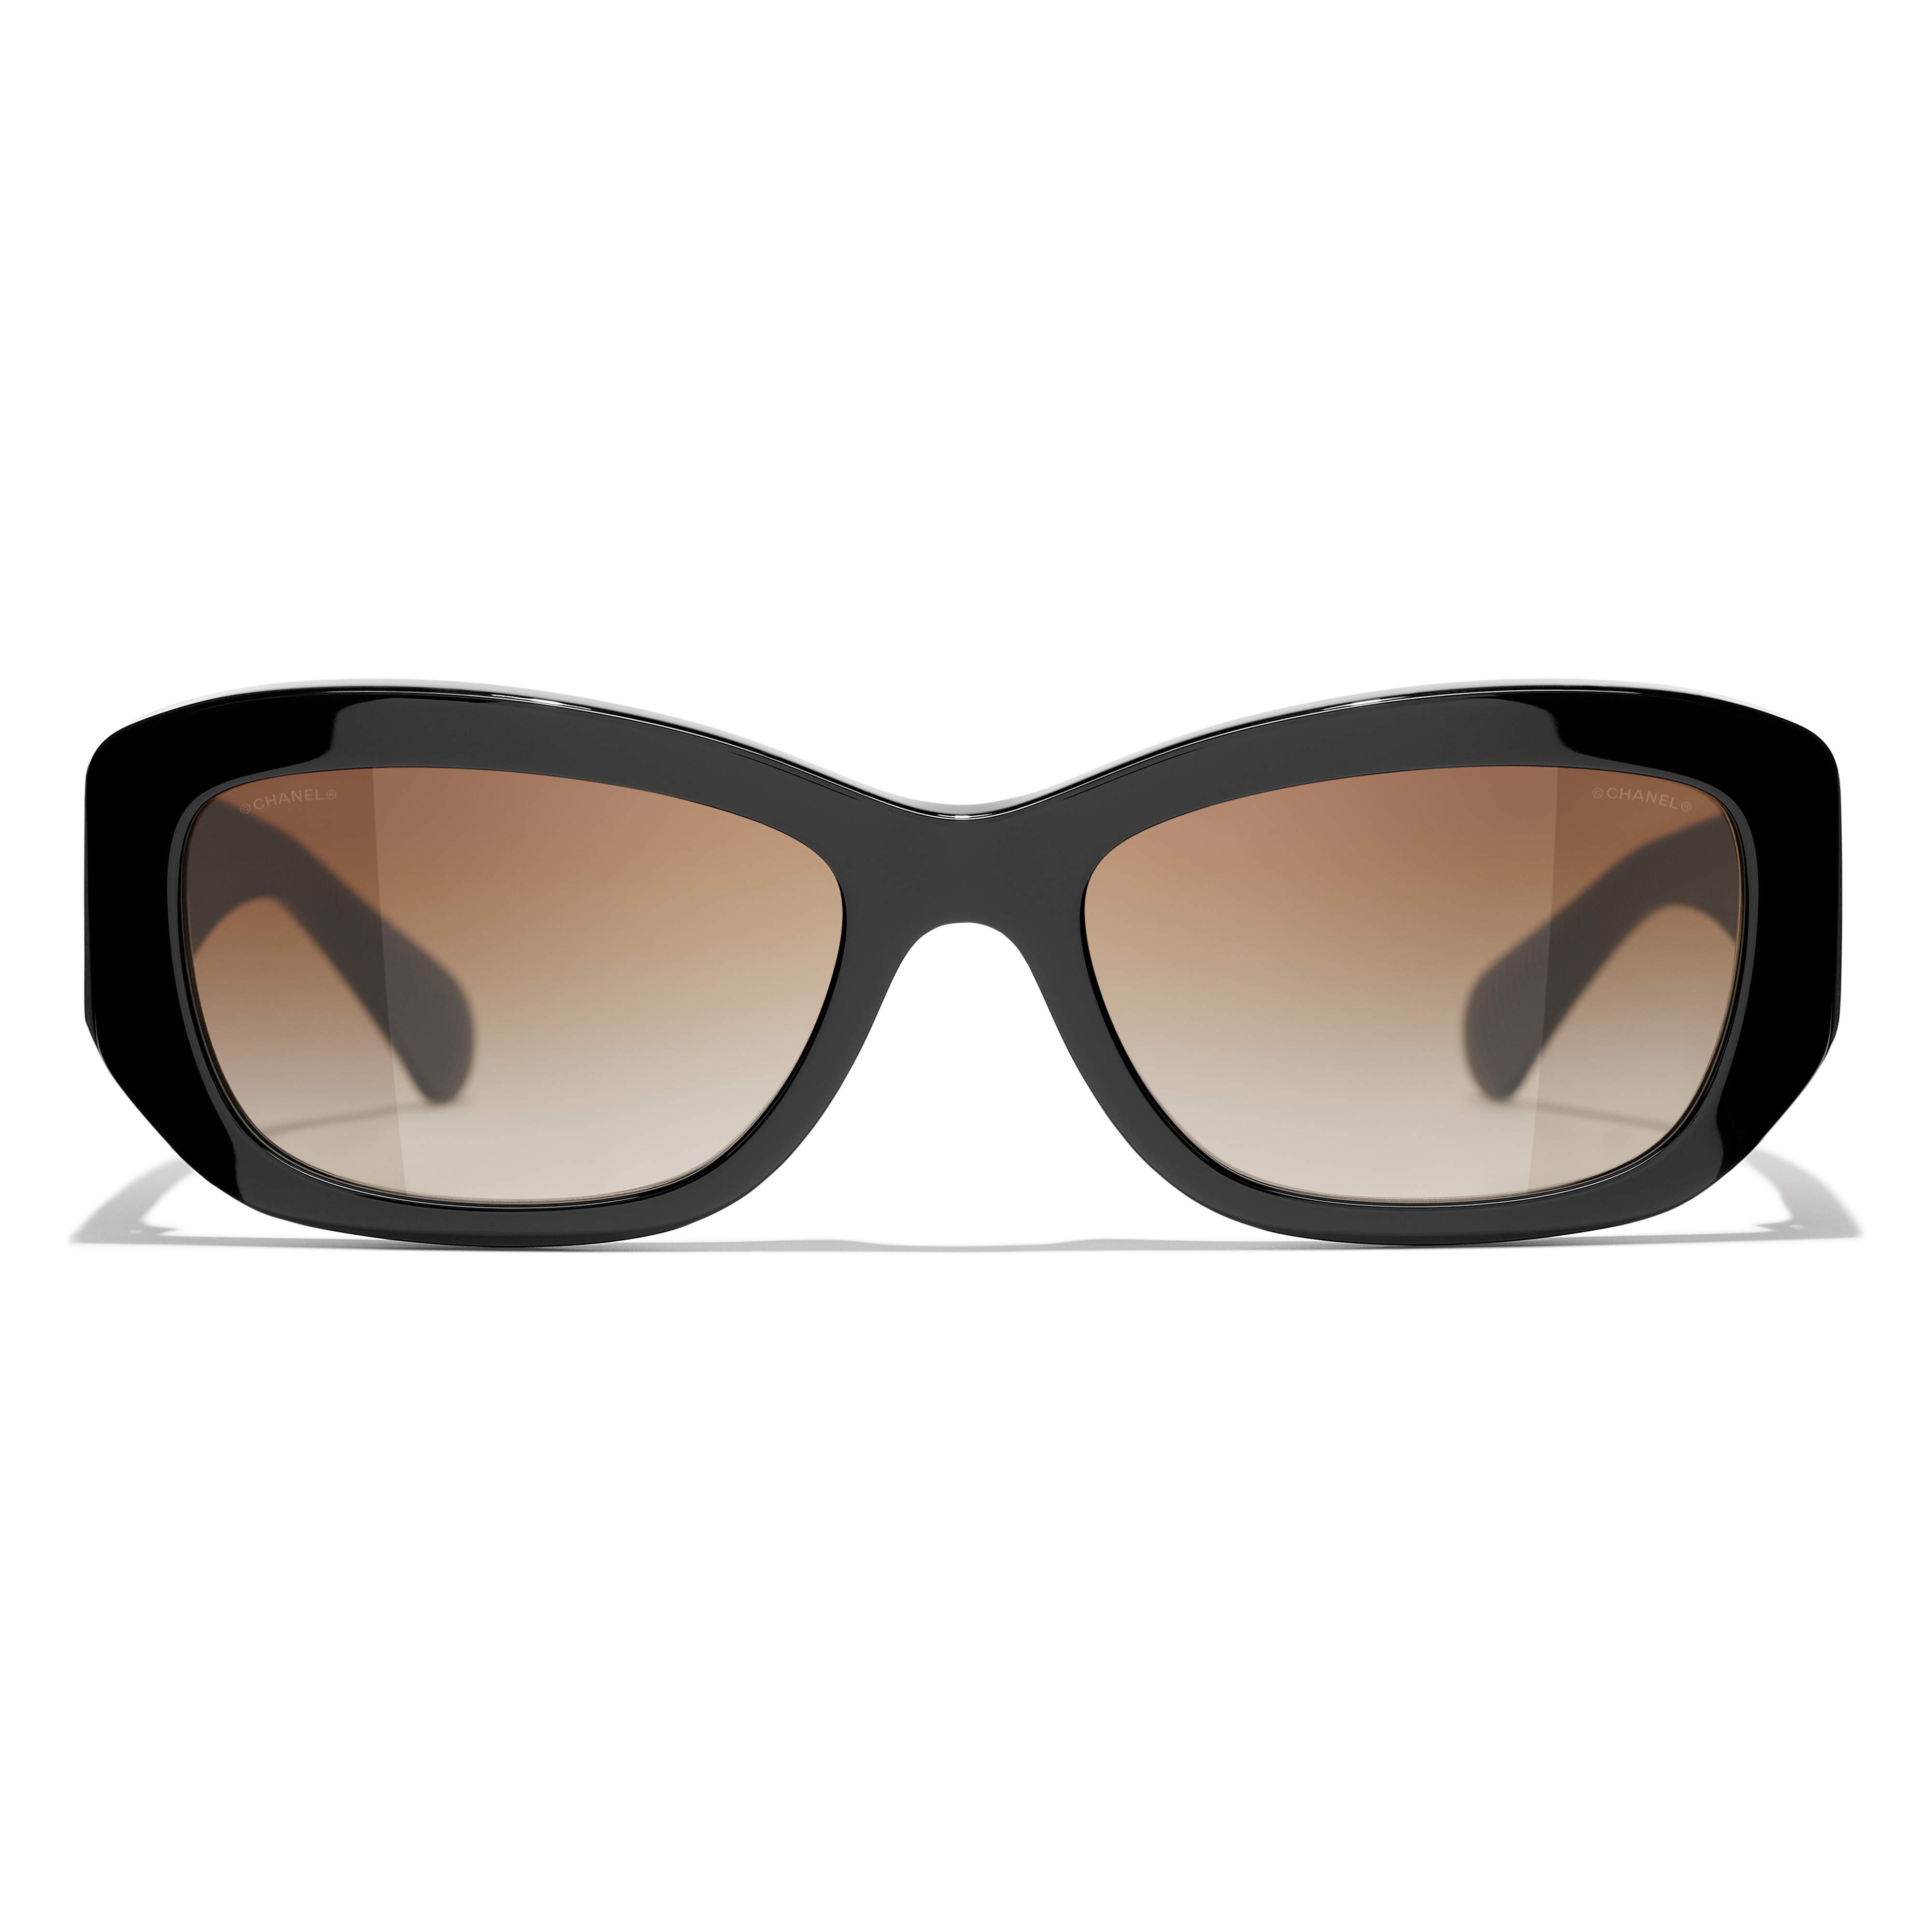 Sunglasses CHANEL CH5513 C622/S6 55-18 Black in stock